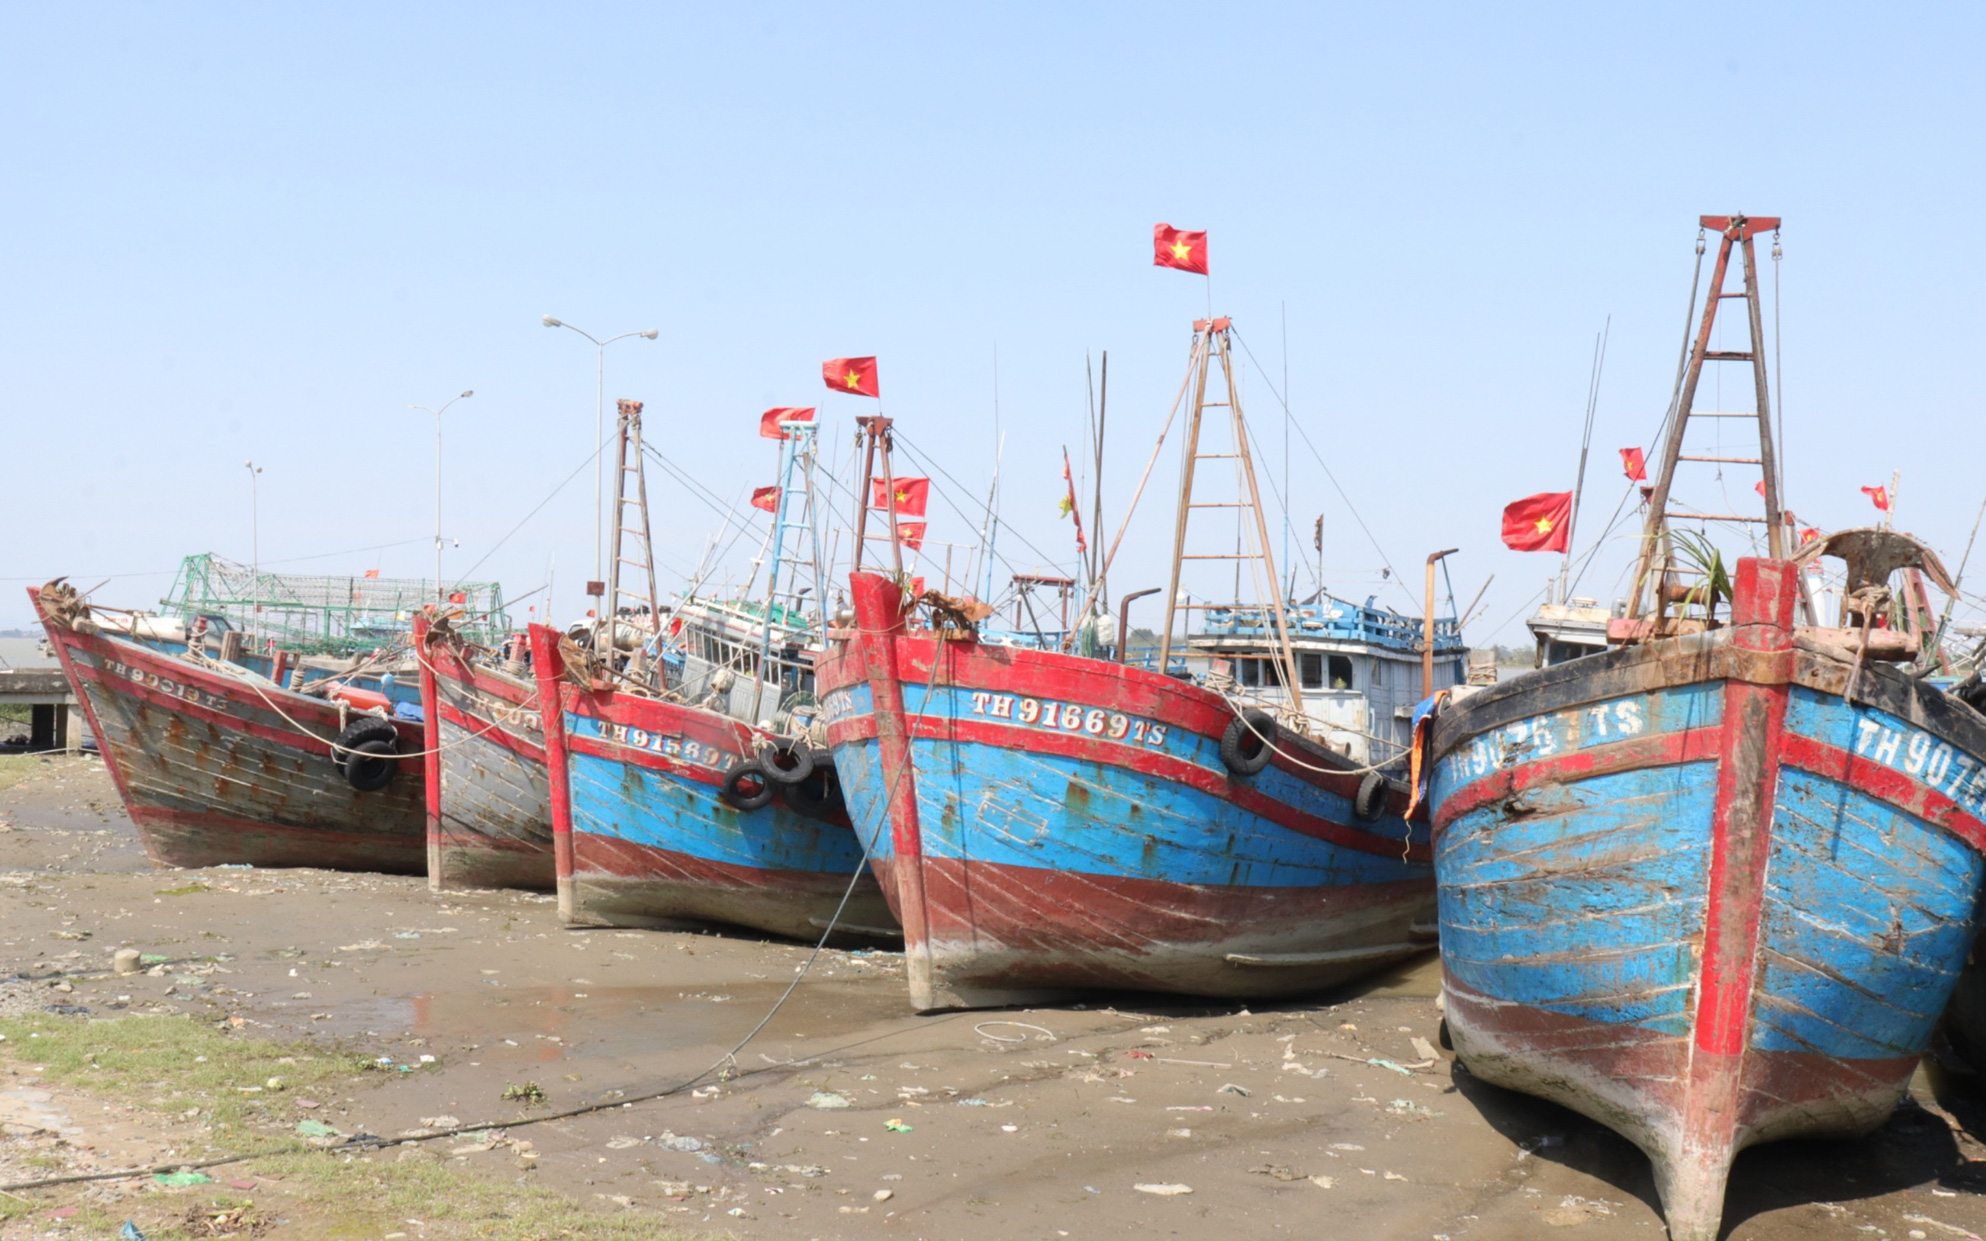 Thanh Hóa: Hàng nghìn tàu cá nằm bờ do giá nhiên liệu tăng